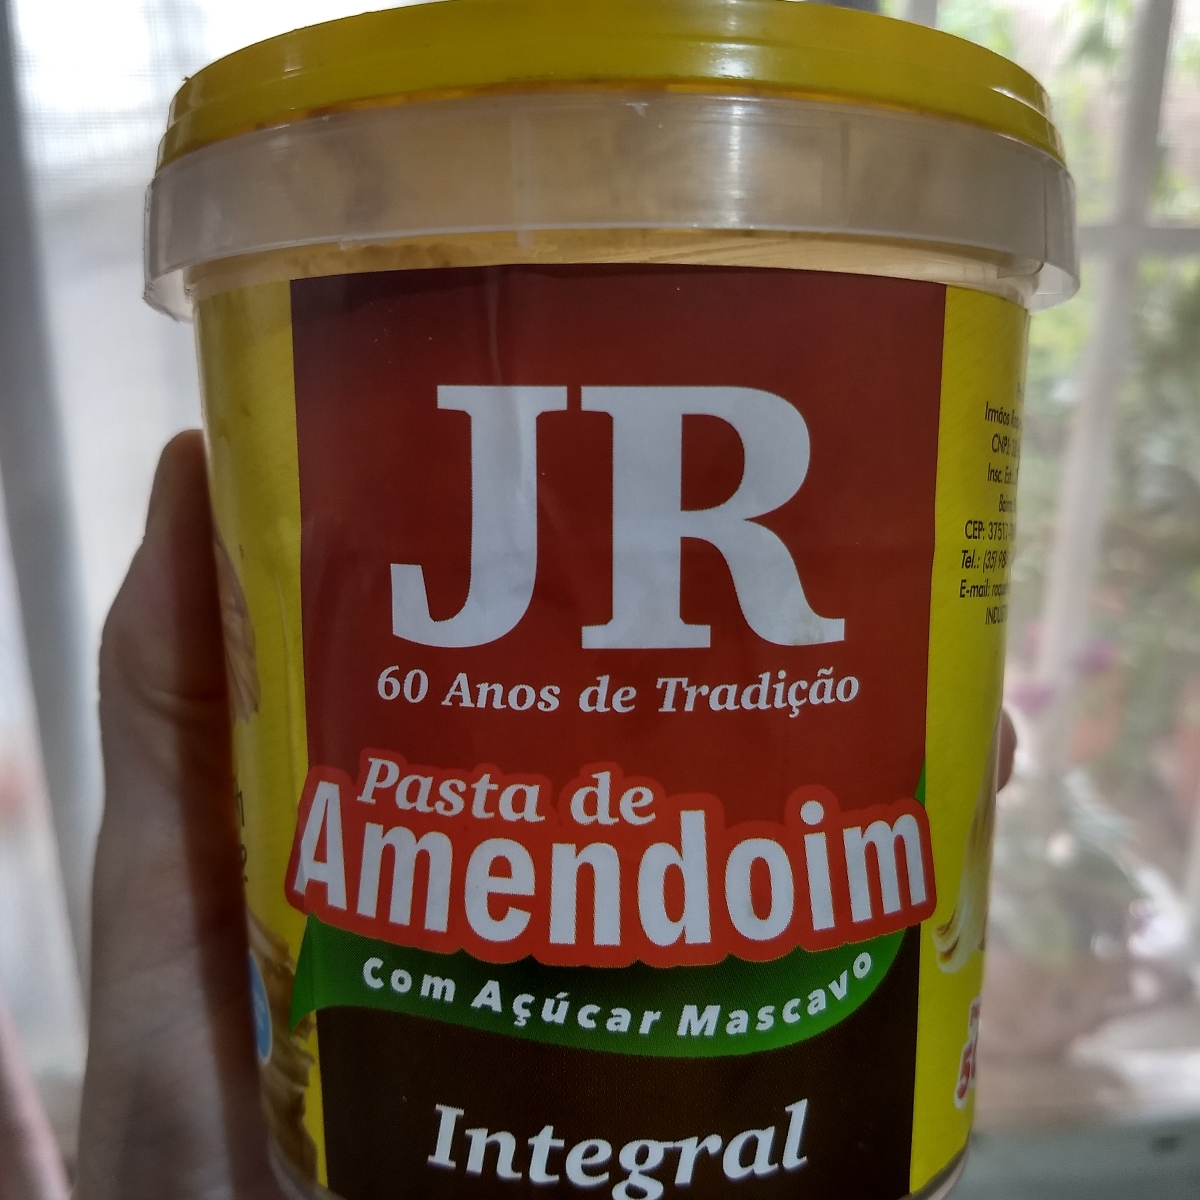 JR Pasta de amendoim com açúcar mascavo Reviews | abillion